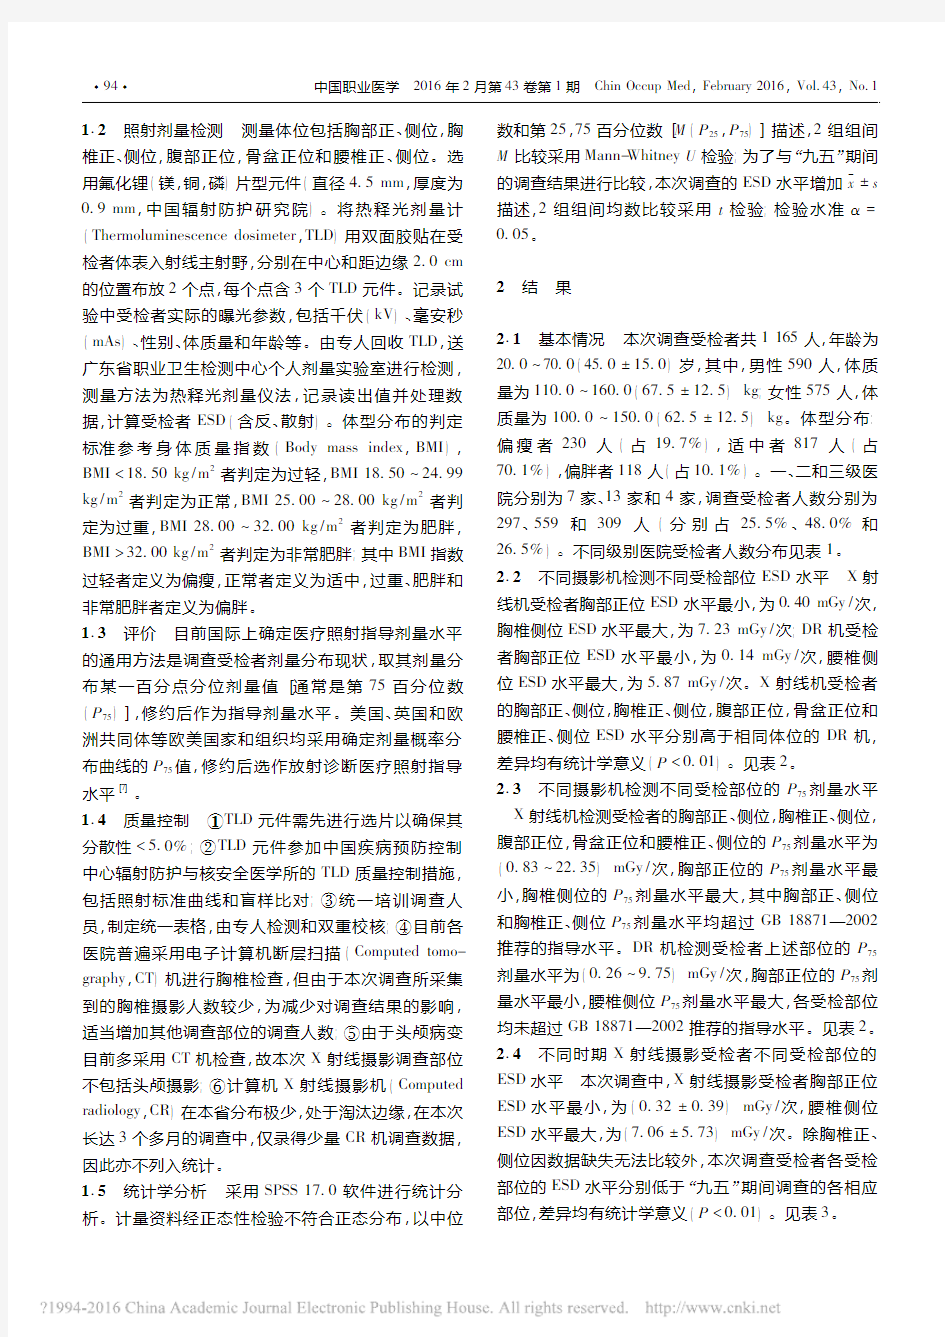 2013年广东省X射线摄影受检者体表入射剂量分析_李明芳